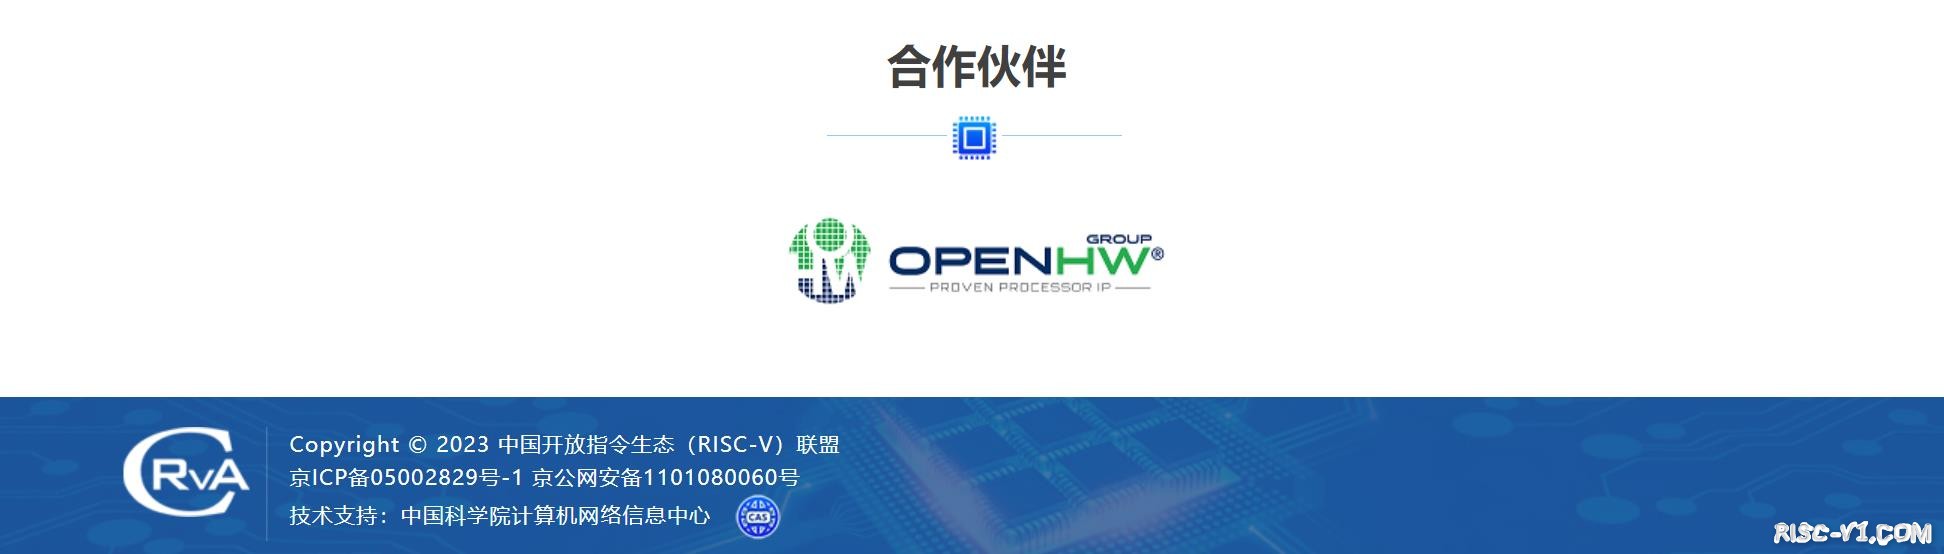 国内芯片技术交流-中国开放指令生态(RISC-V)联盟 合做伙伴【OpenHWGroup】介绍risc-v单片机中文社区(2)